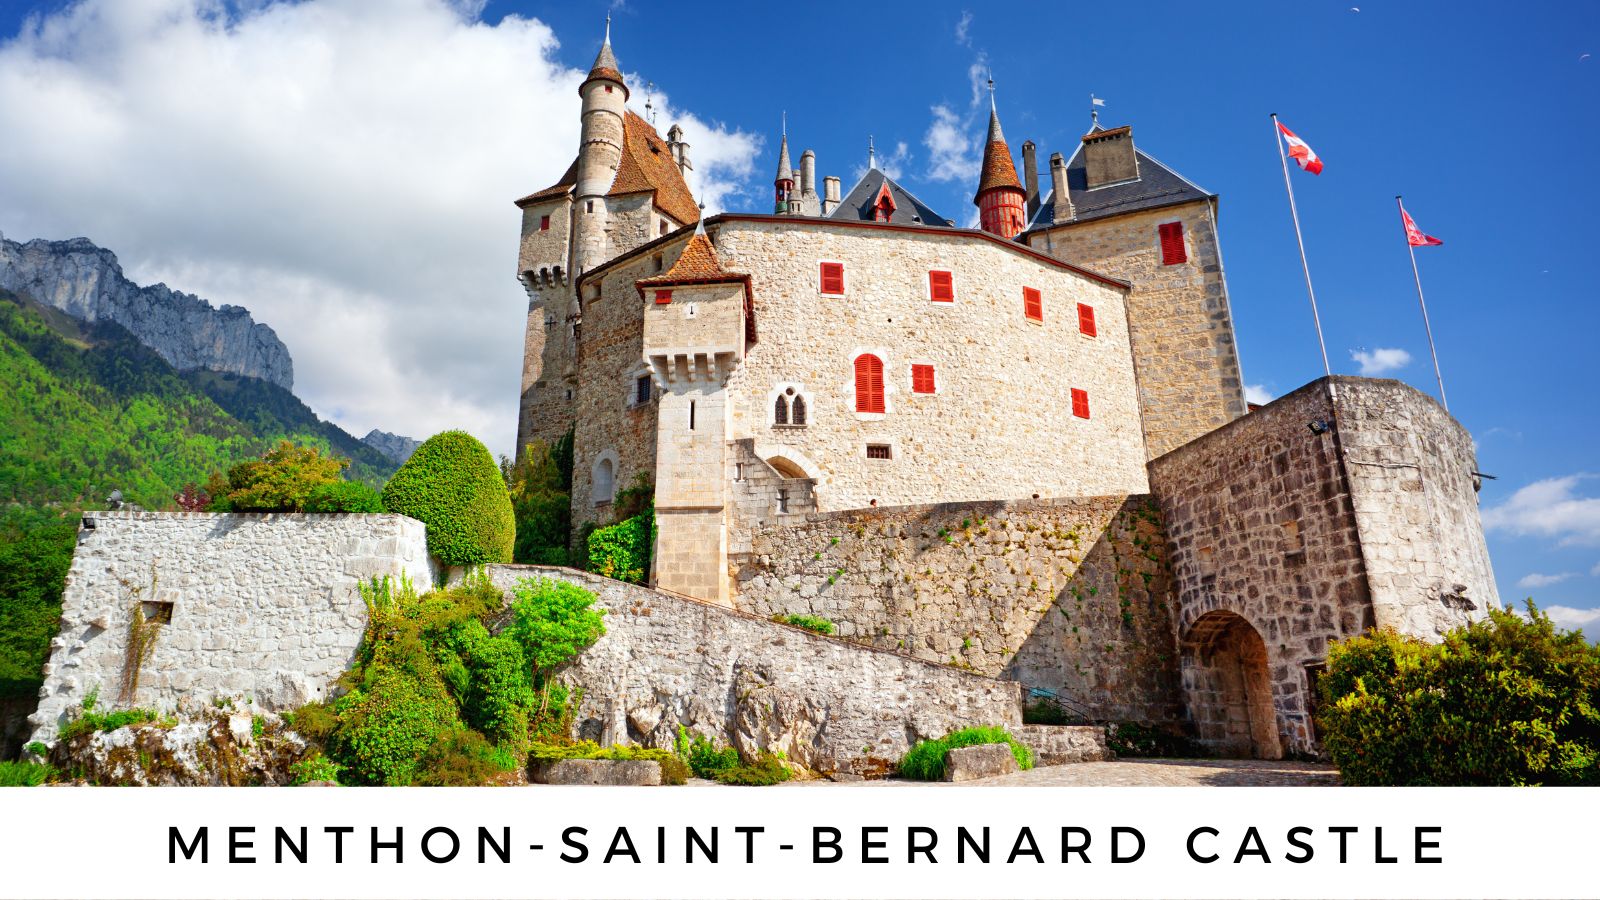 El castillo de Menthon Saint Bernard, inspiración para la Bella Durmiente